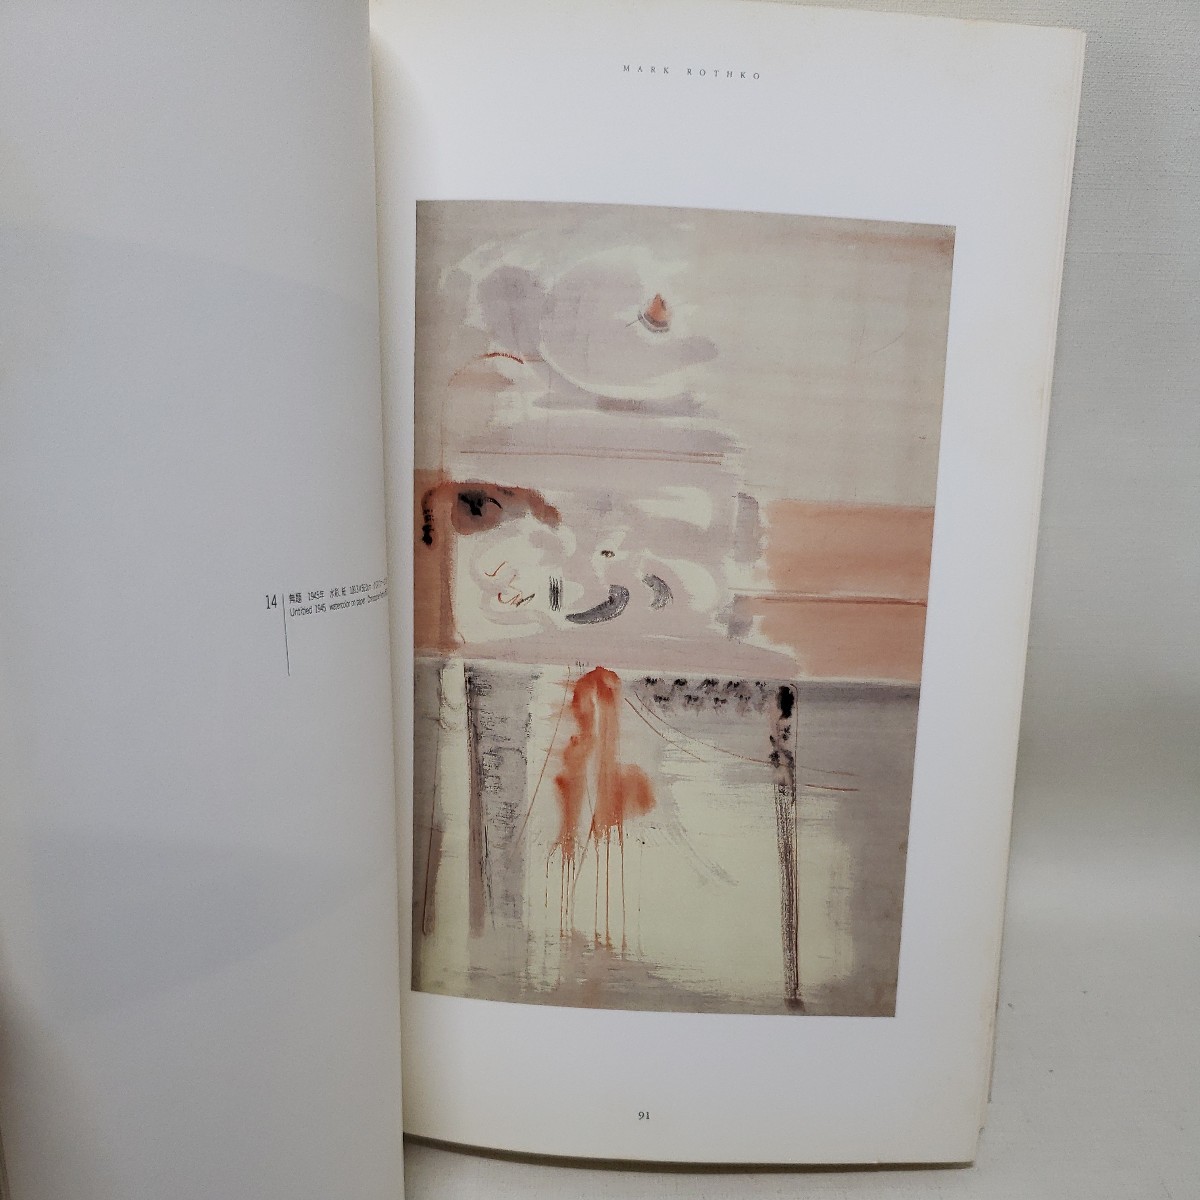 「図録　マーク・ロスコ展　Mark Rothko」 川村記念美術館 : デイビィッド・アンファム　カラー・フィールド・ペインティング色面抽象_画像7